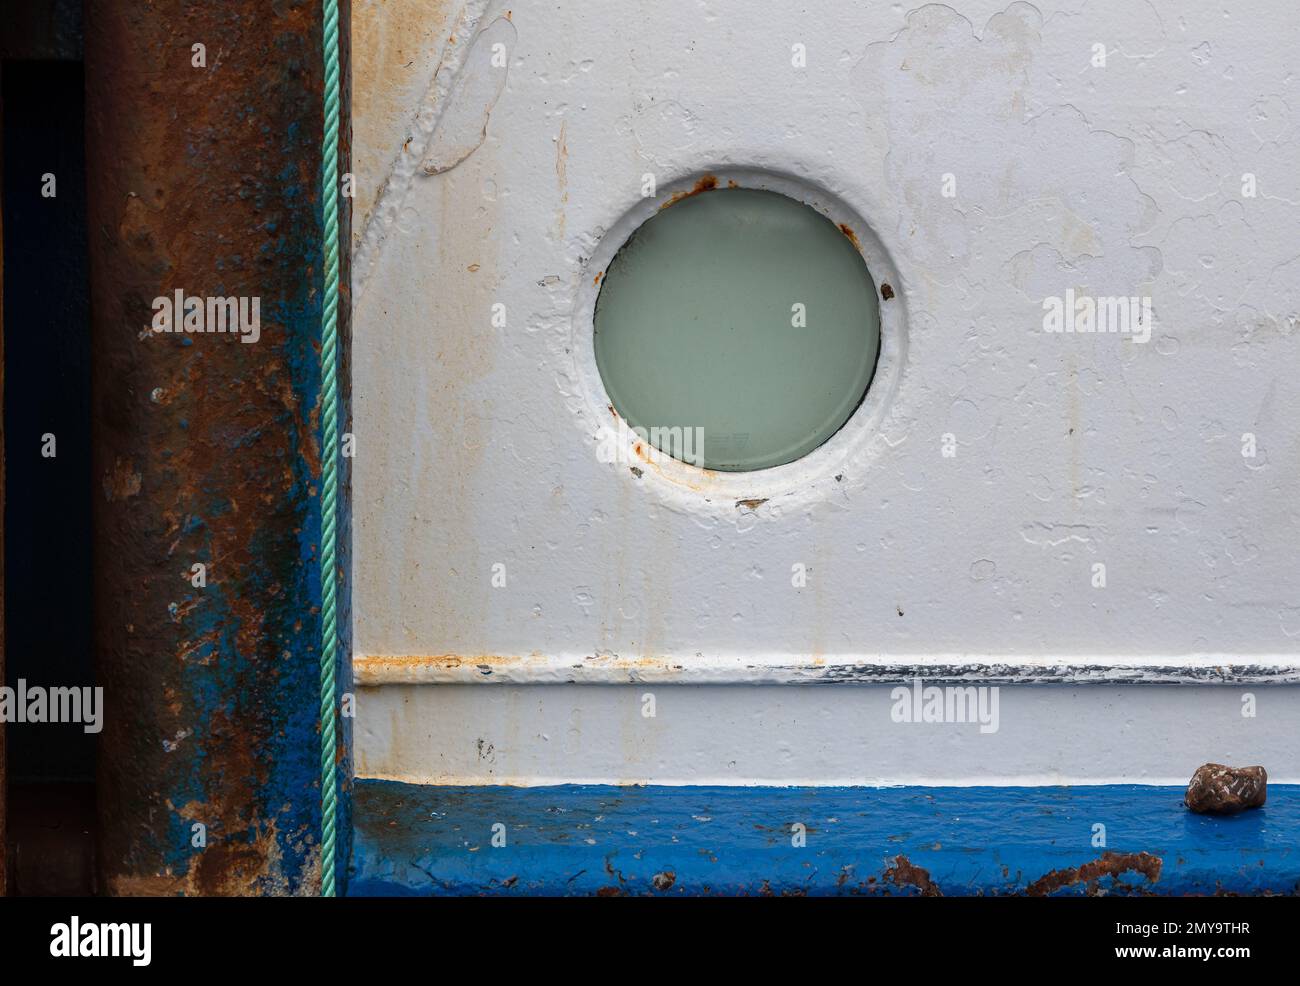 Fenster oder Backbordloch an der Seite eines Fischerboots. Mischung aus Kreisen und Linien mit Verwitterung und Rost, die die Textur erhöhen. Stockfoto